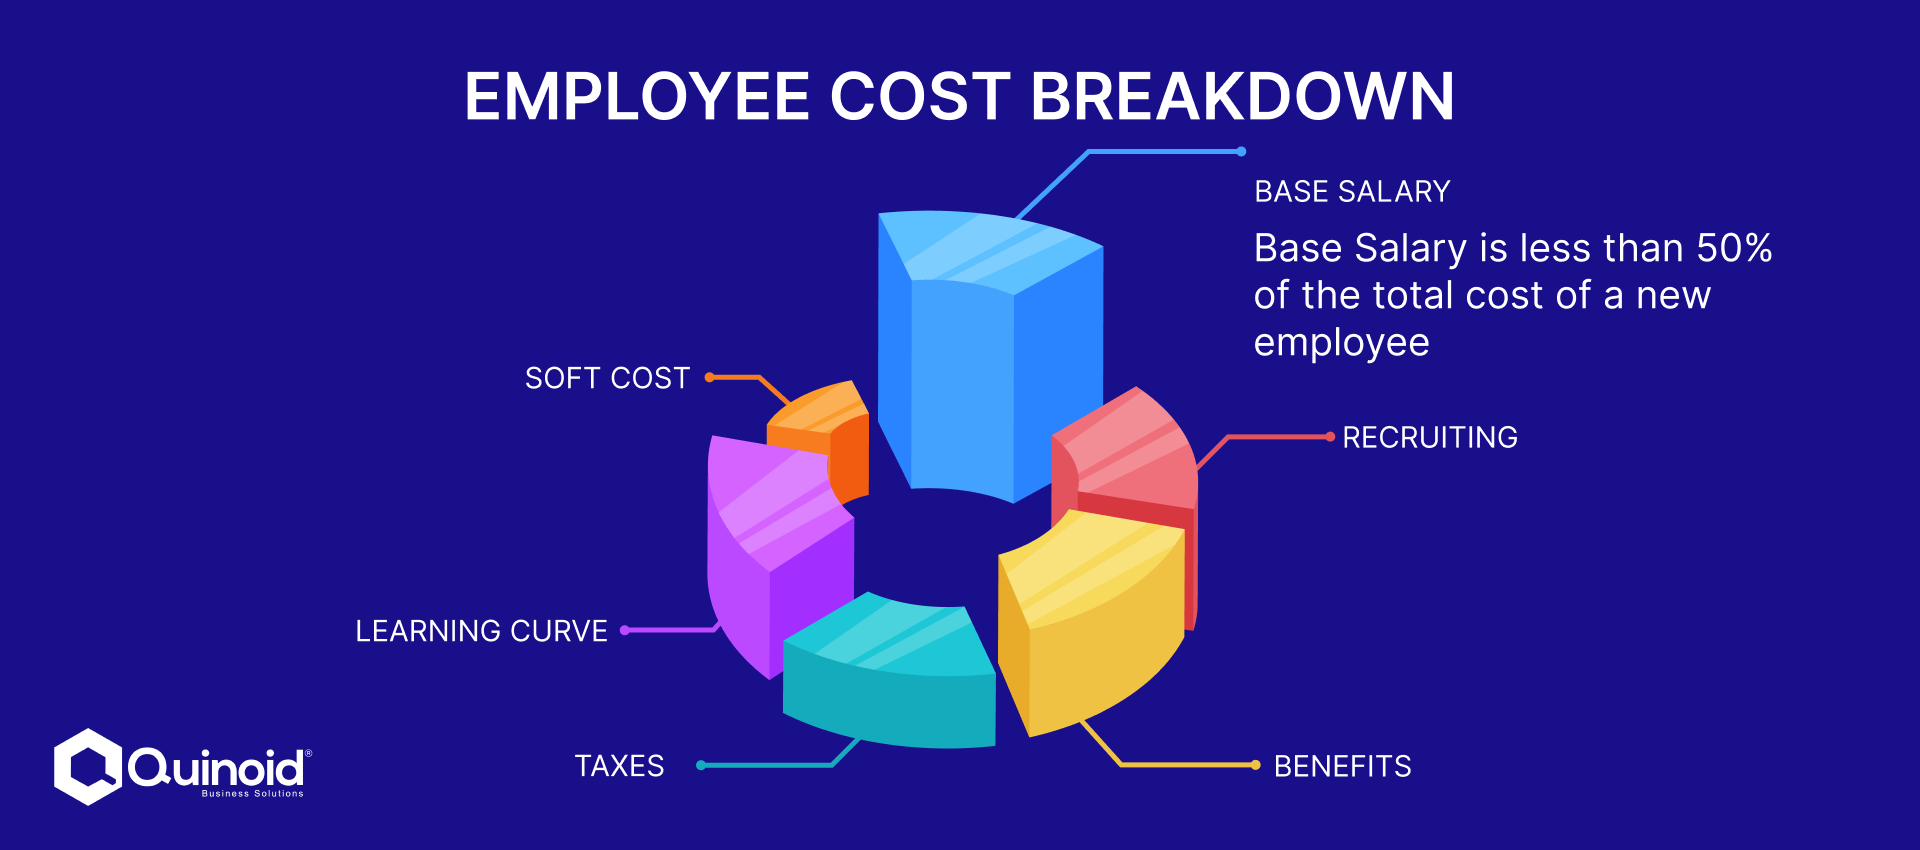 Employee Cost Breakdown